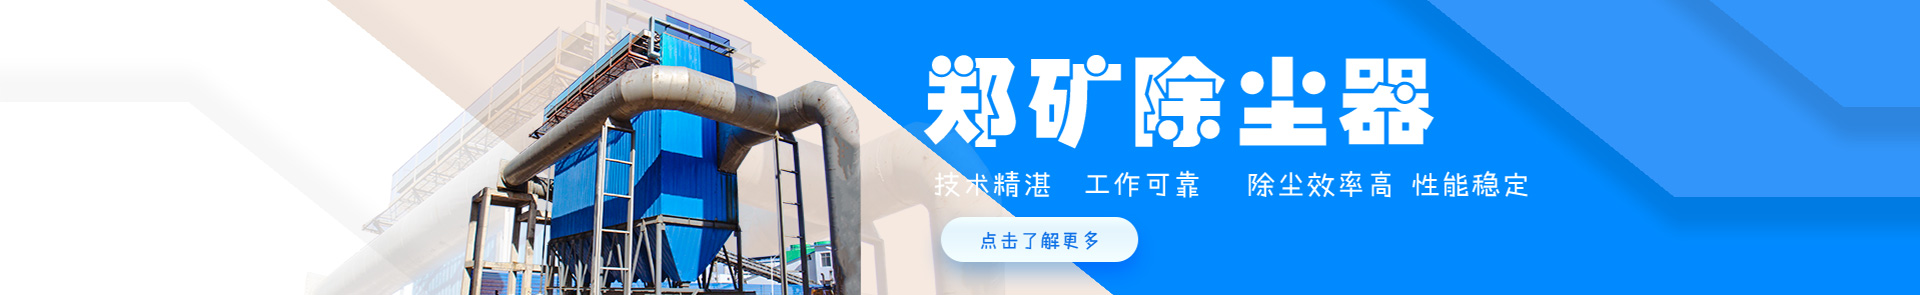 米乐游戏下载:中粮科学院研发成功具有国内领先水平预榨饼冷却机